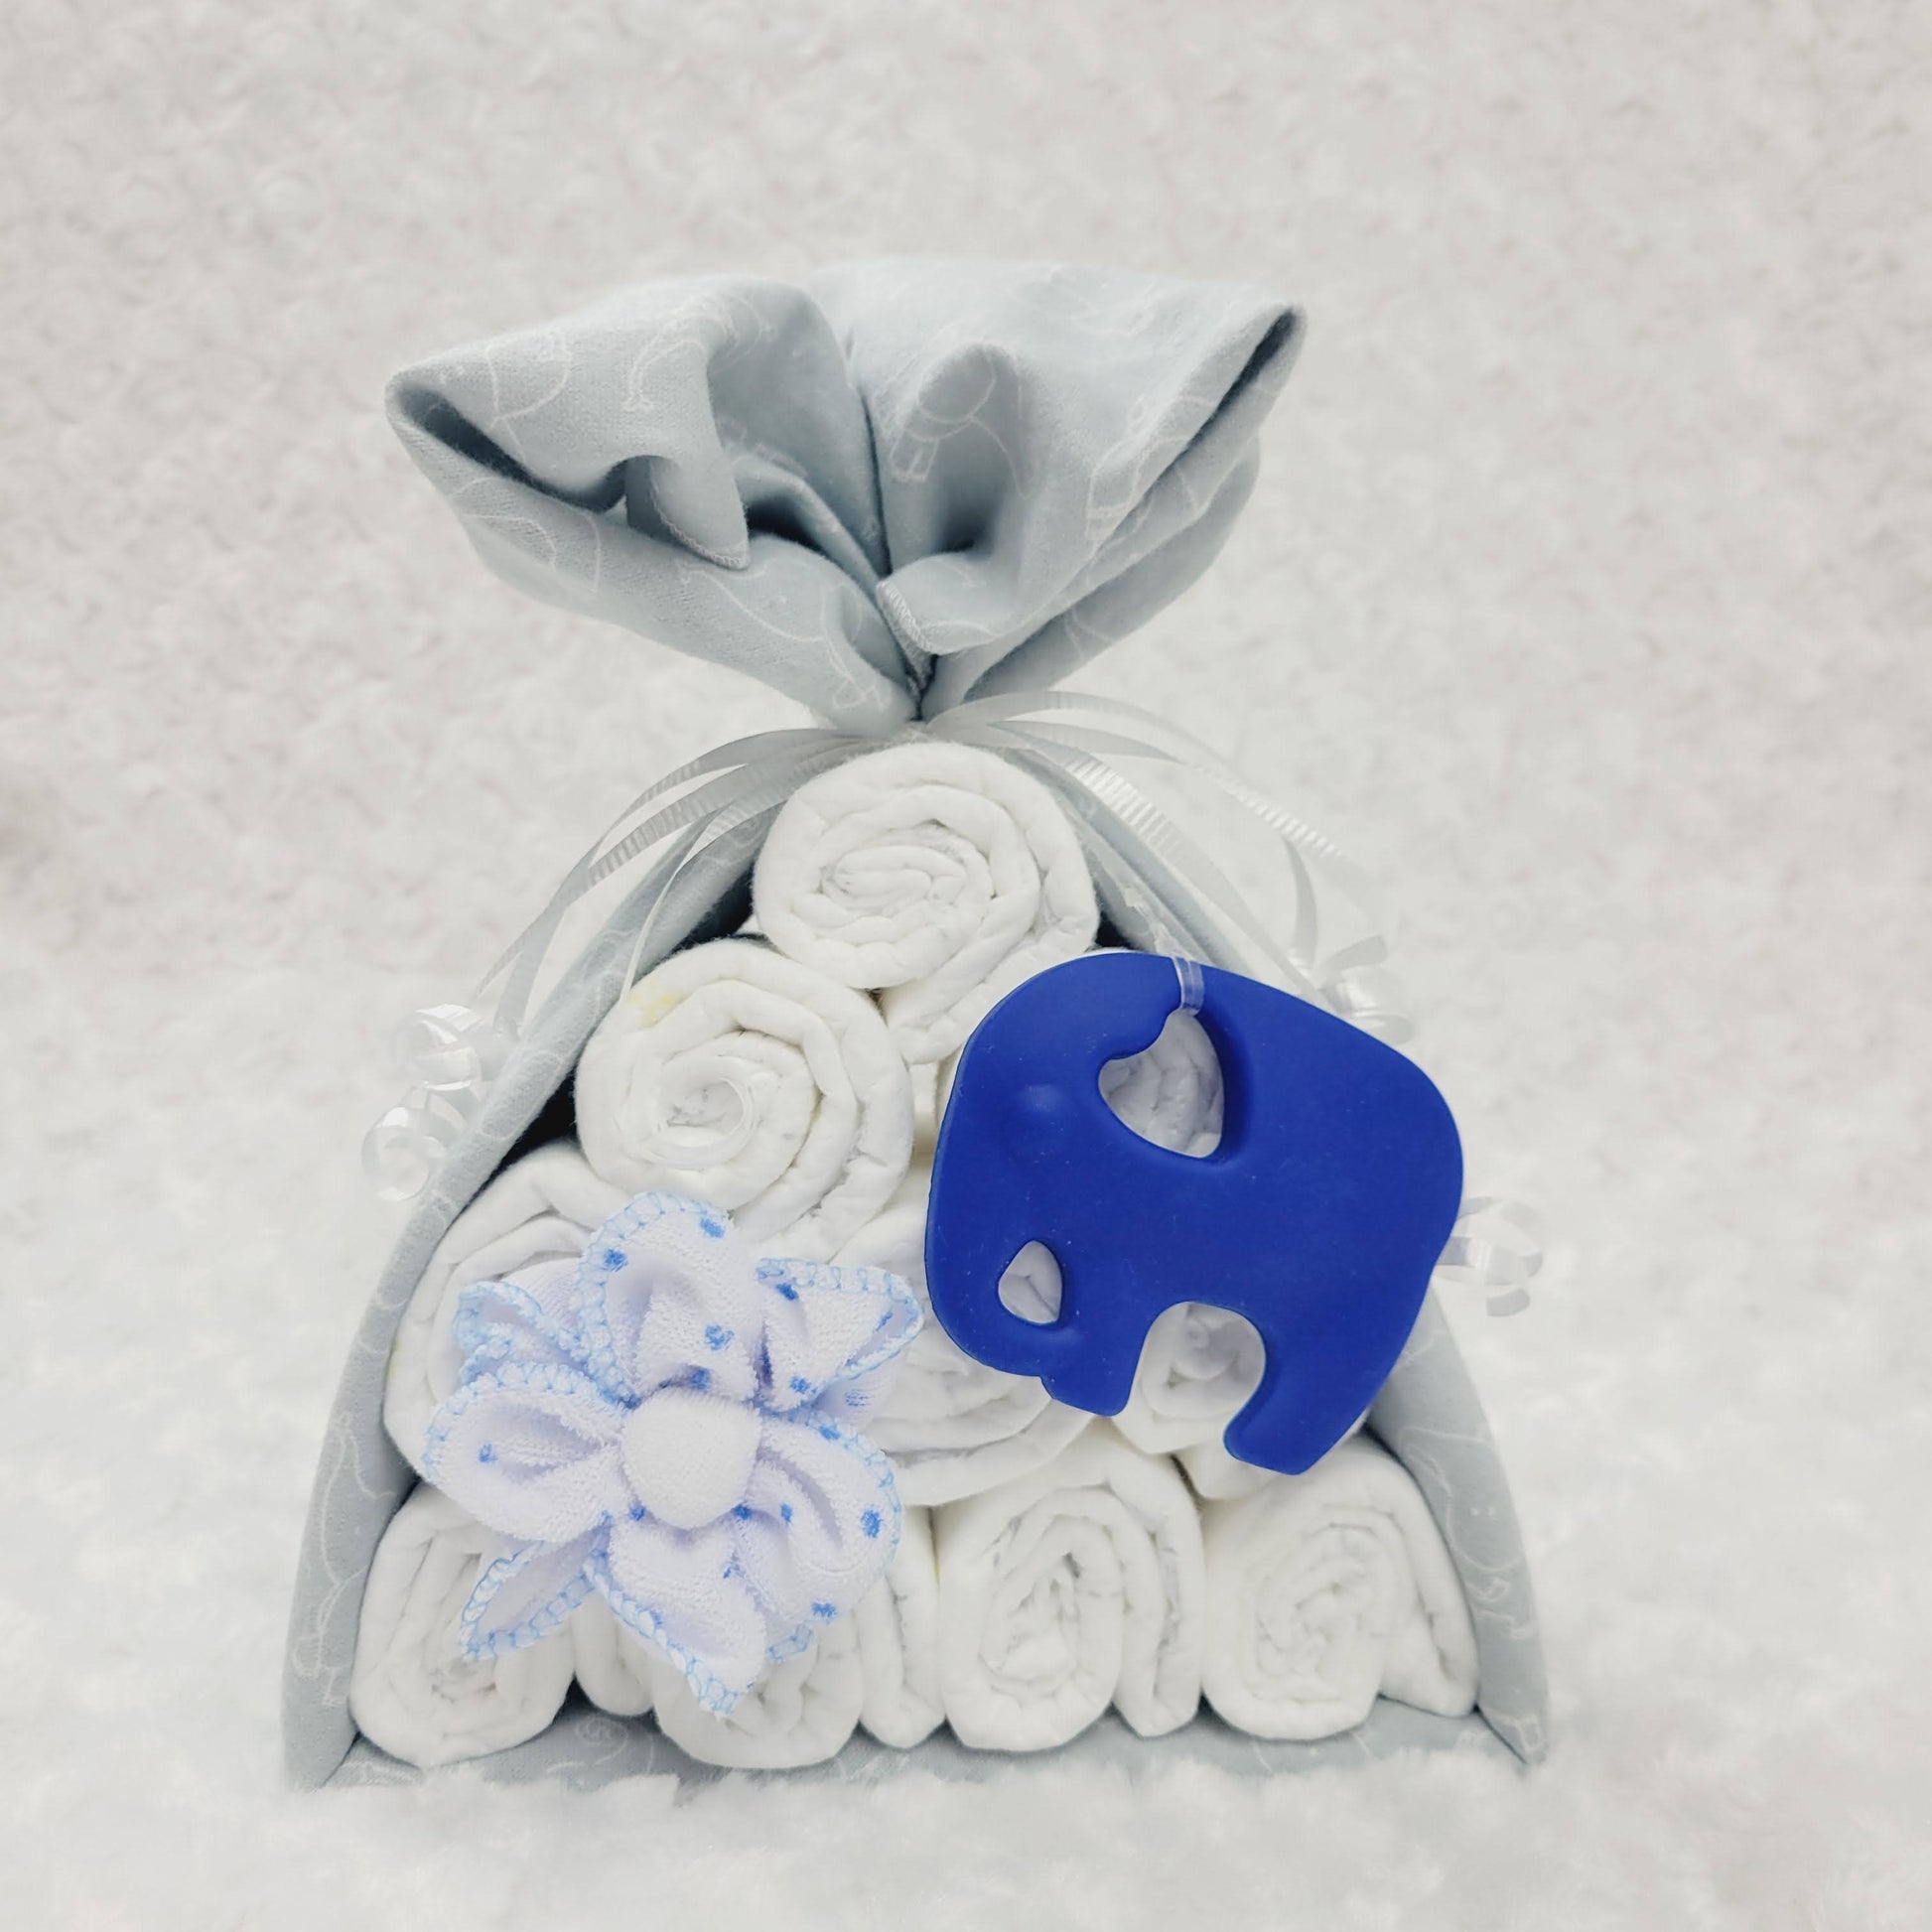 Baluchon vu de face avec un couverture grise imprimé d'éléphant blanc. L'ensemble cadeau contient 10 couches pour bébé de taille #2 et 2 débarbouillettes en forme de fleur. Complété d'un jouet de dentition en silicone en forme d'éléphant bleu royal.